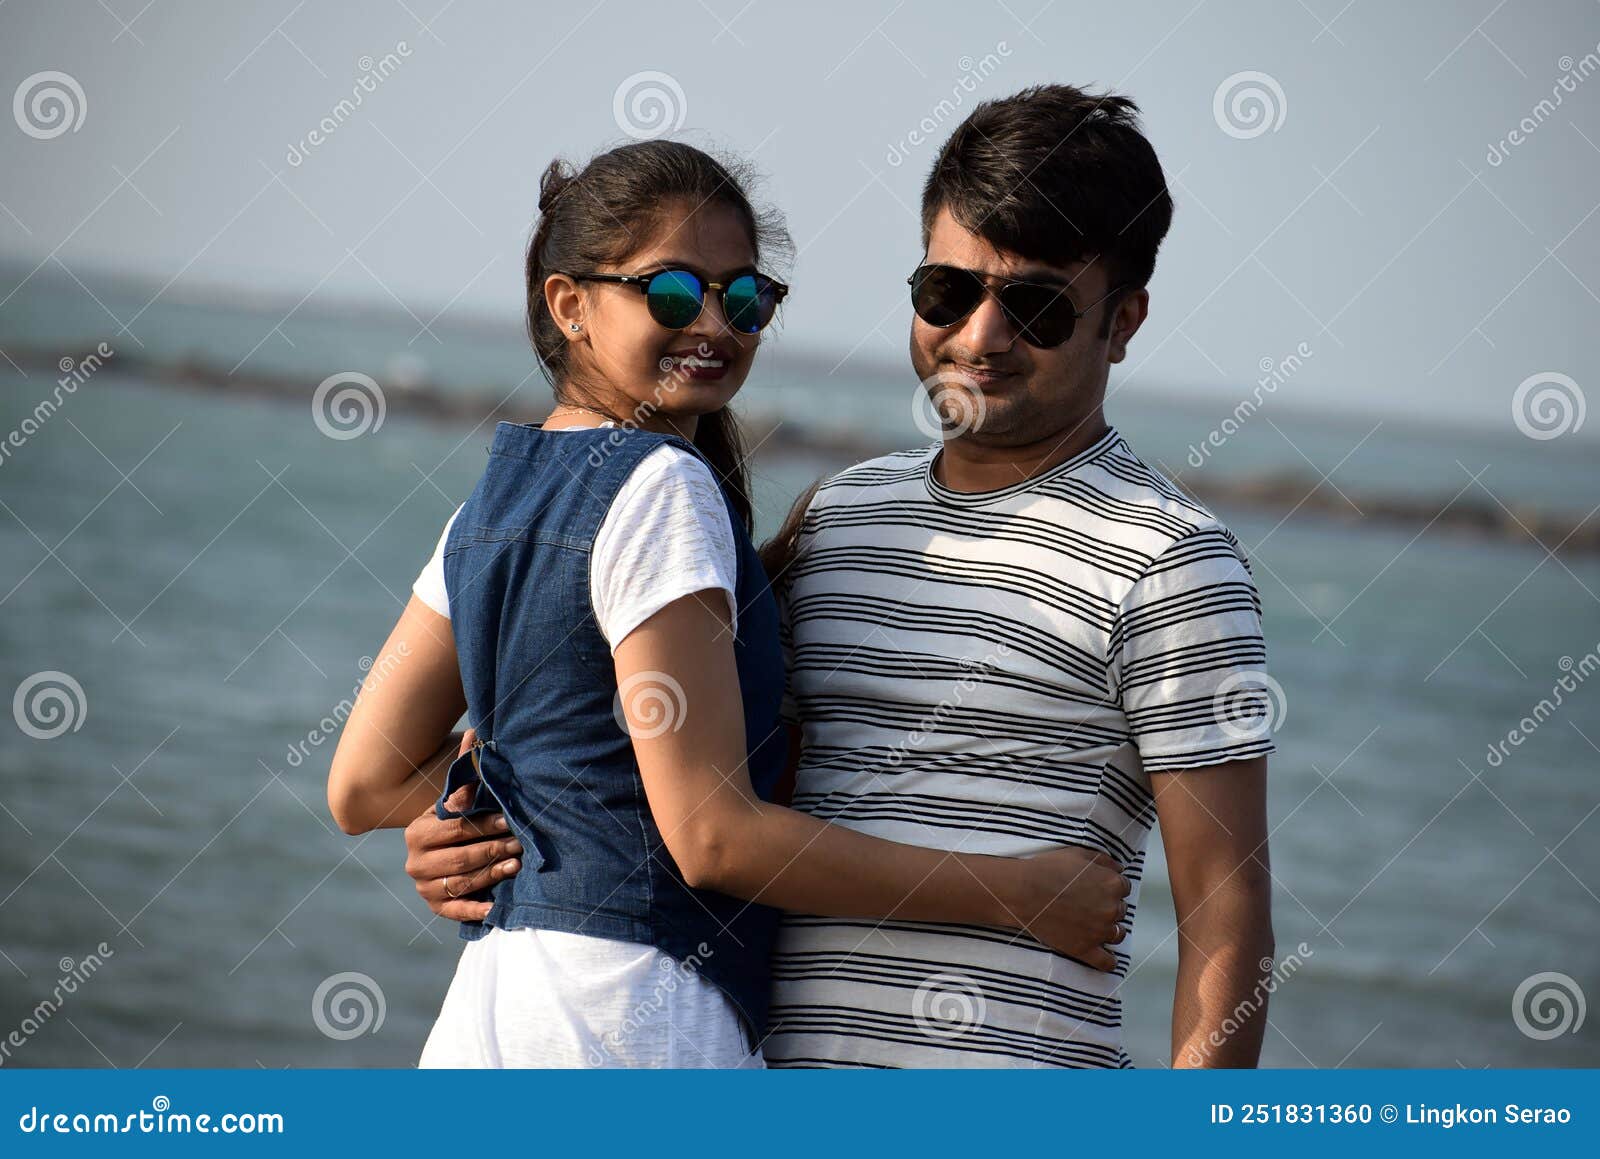 Couple posing at the beach, результатов — 21 220: фотографии без  лицензионных платежей и стоковые изображения | Shutterstock